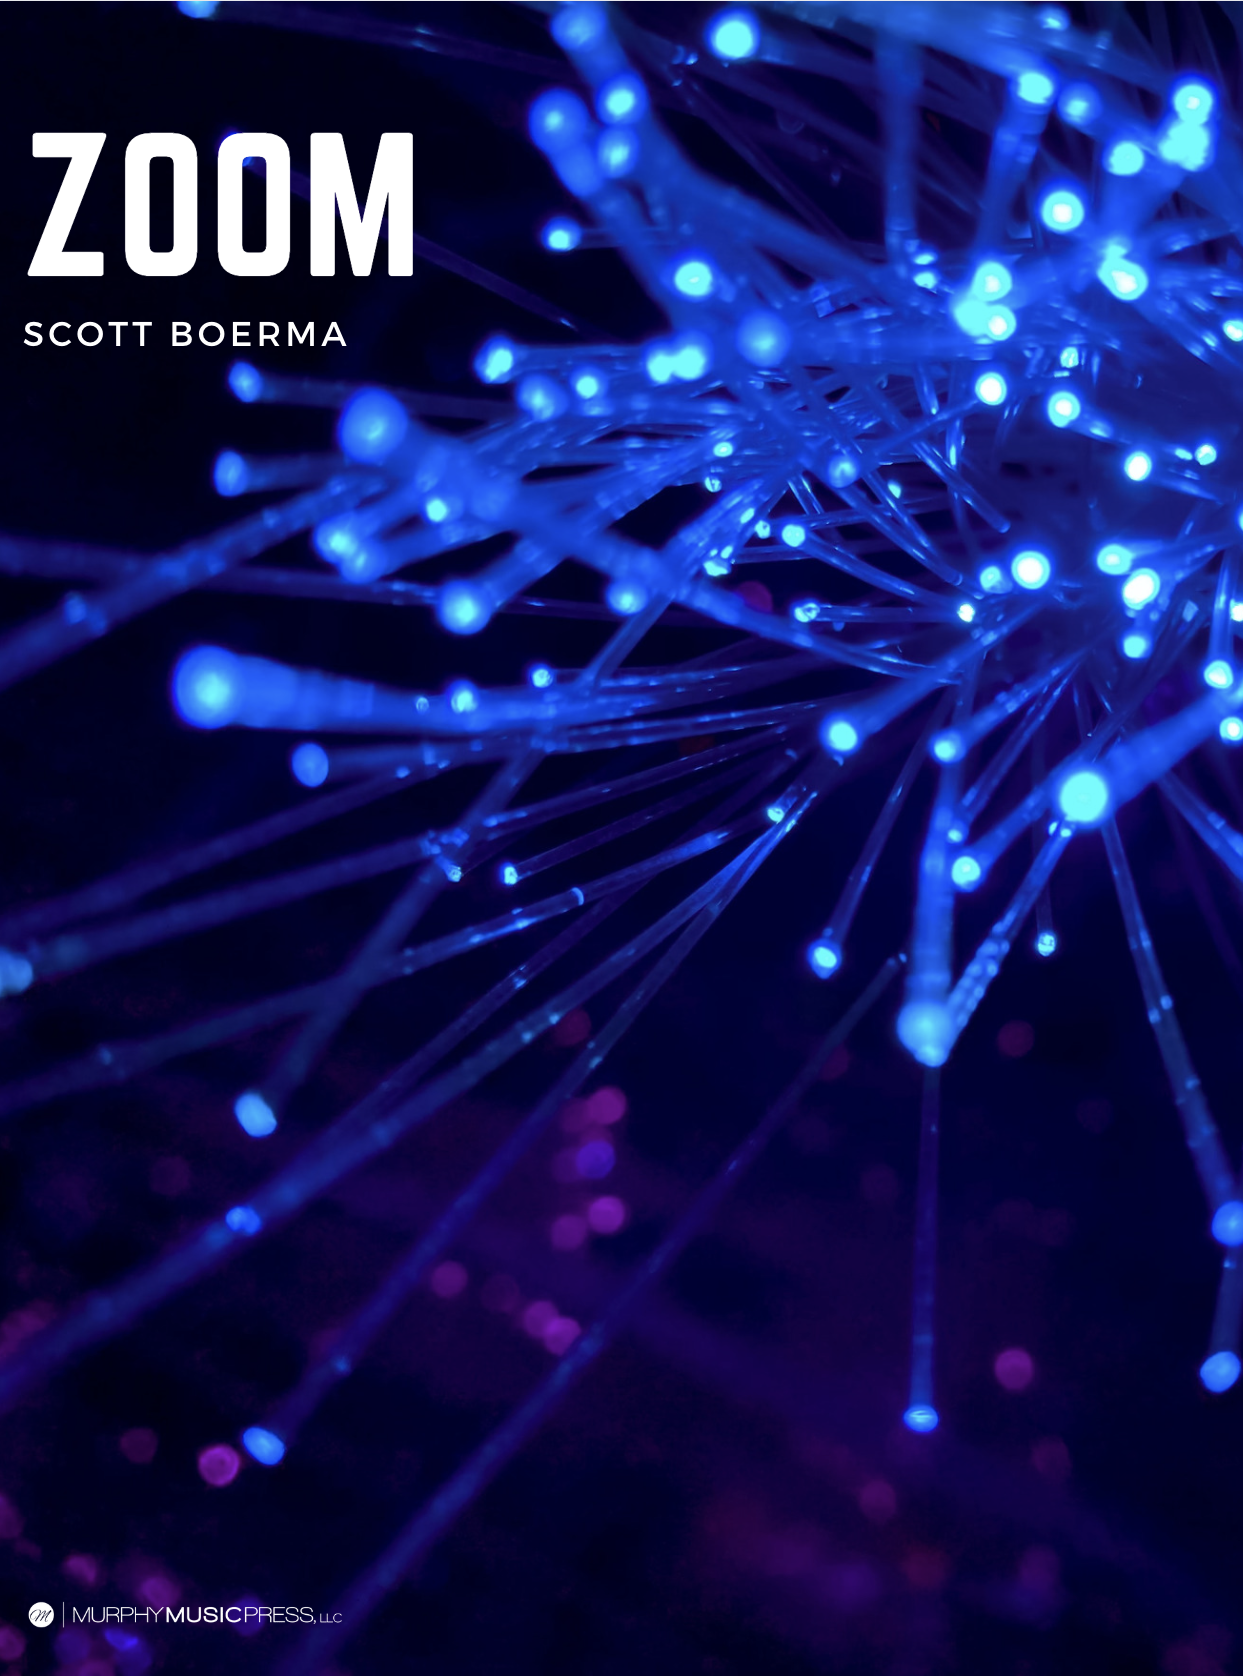 Zoom: Fanfare For Wind Ensemble  by Scott Boerma